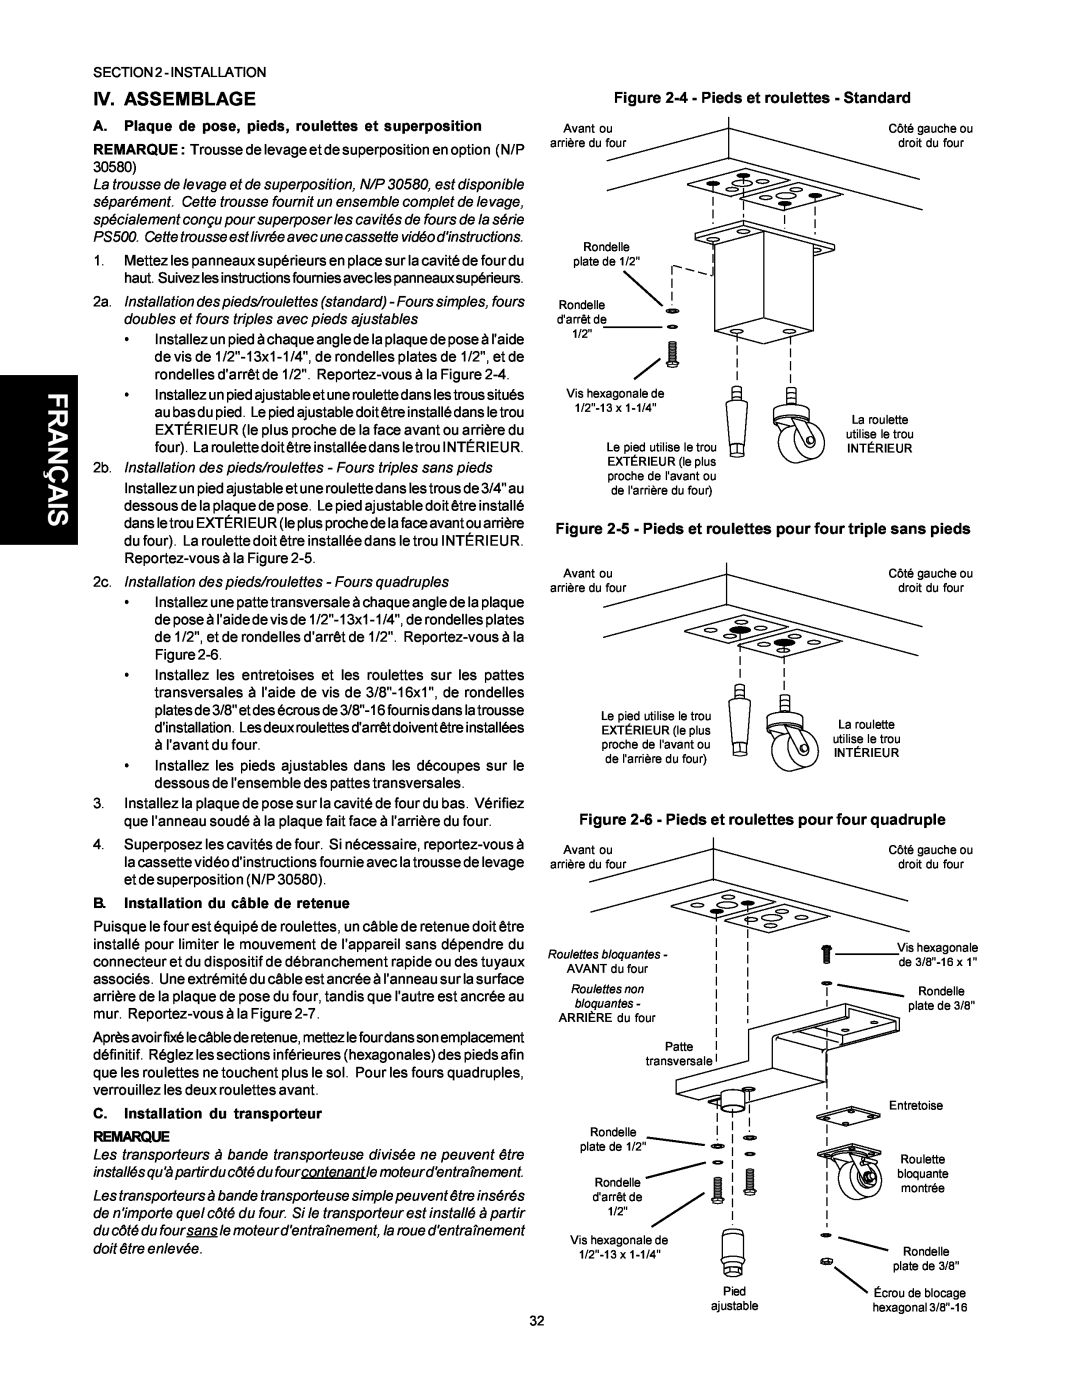 Middleby Marshall PS500 Iv. Assemblage, Français, 4 - Pieds et roulettes - Standard, B. Installation du câble de retenue 